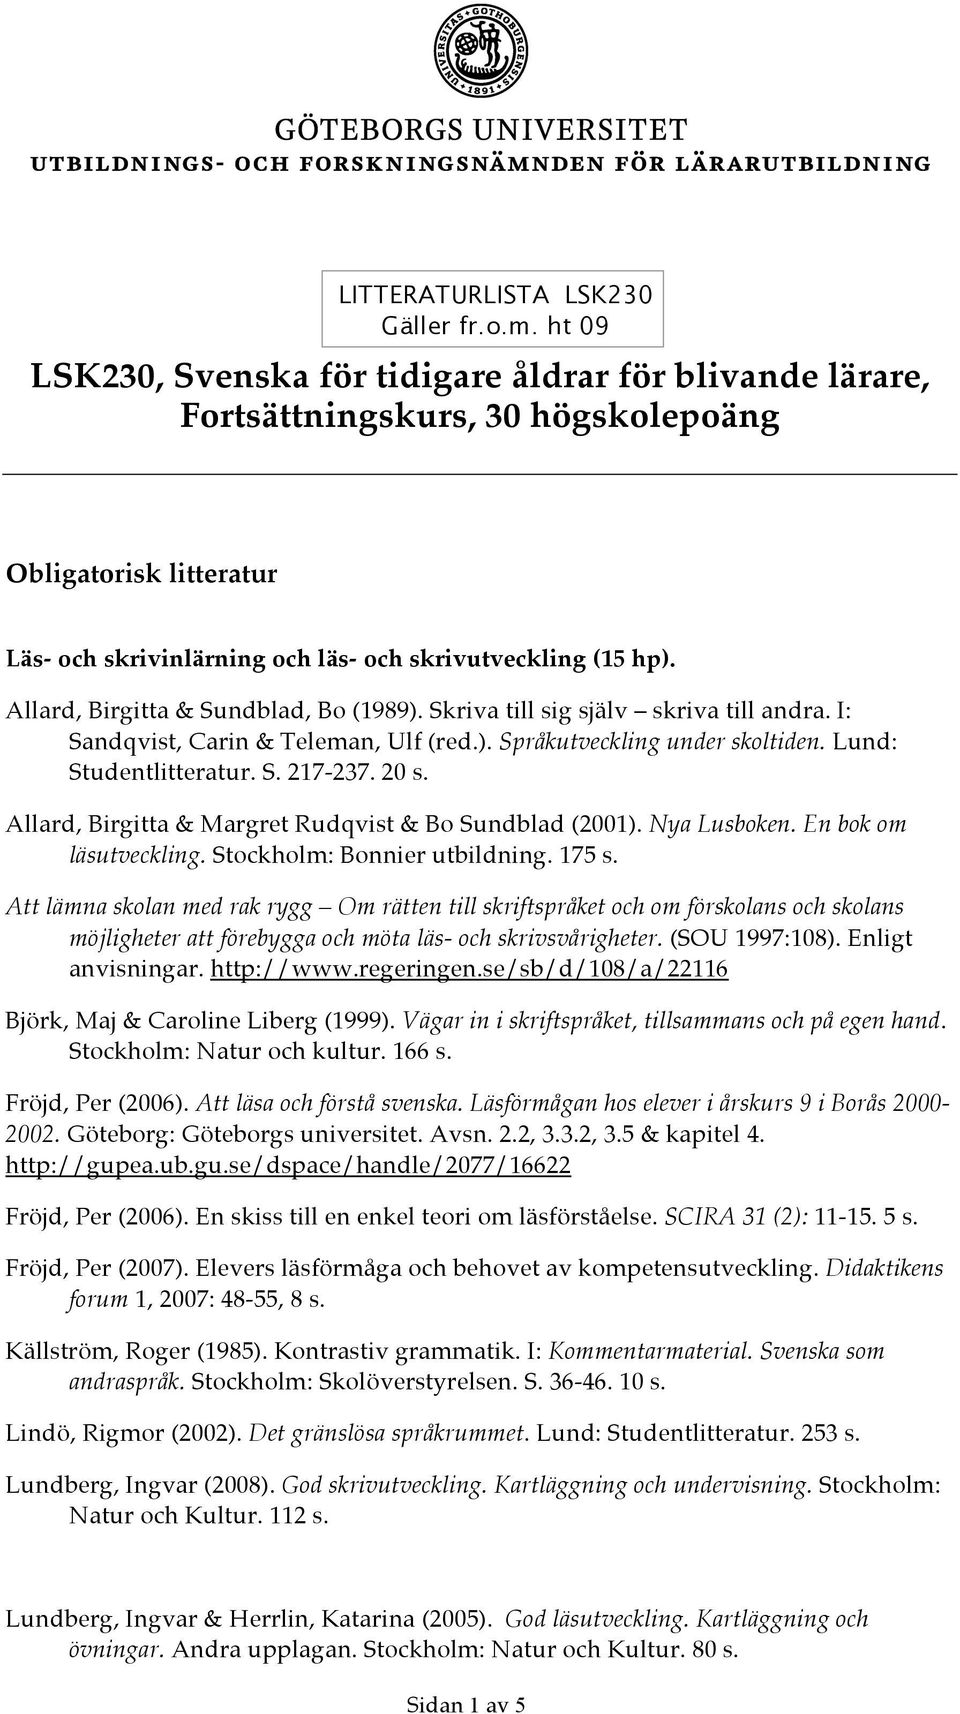 Allard, Birgitta & Sundblad, Bo (1989). Skriva till sig själv skriva till andra. I: Sandqvist, Carin & Teleman, Ulf (red.). Språkutveckling under skoltiden. Lund: Studentlitteratur. S. 217-237. 20 s.